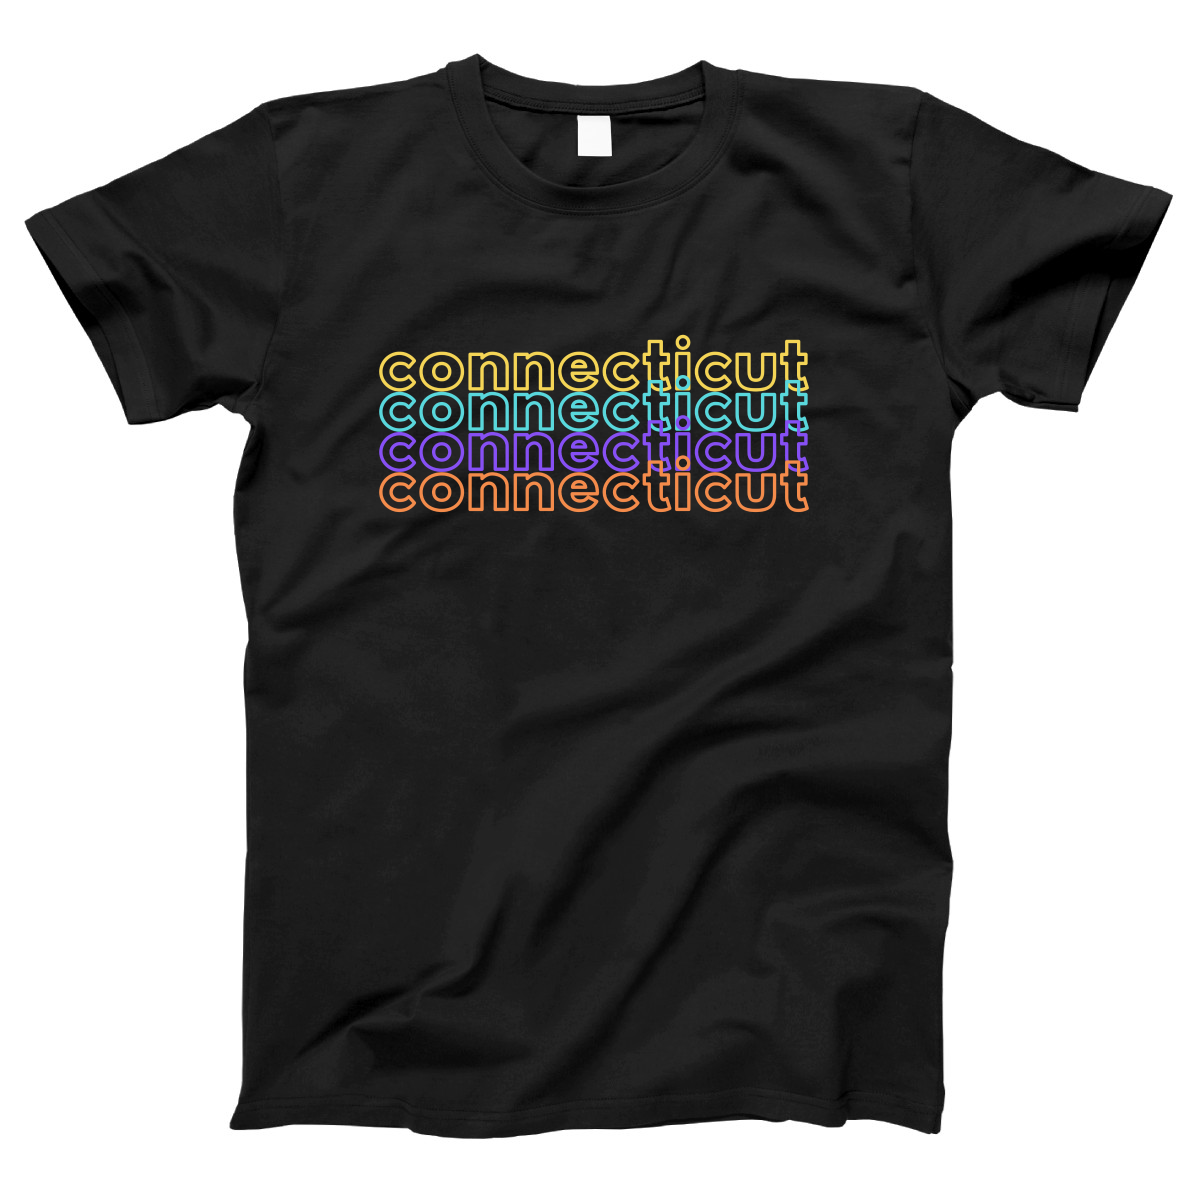 Connecticut Women's T-shirt | Black